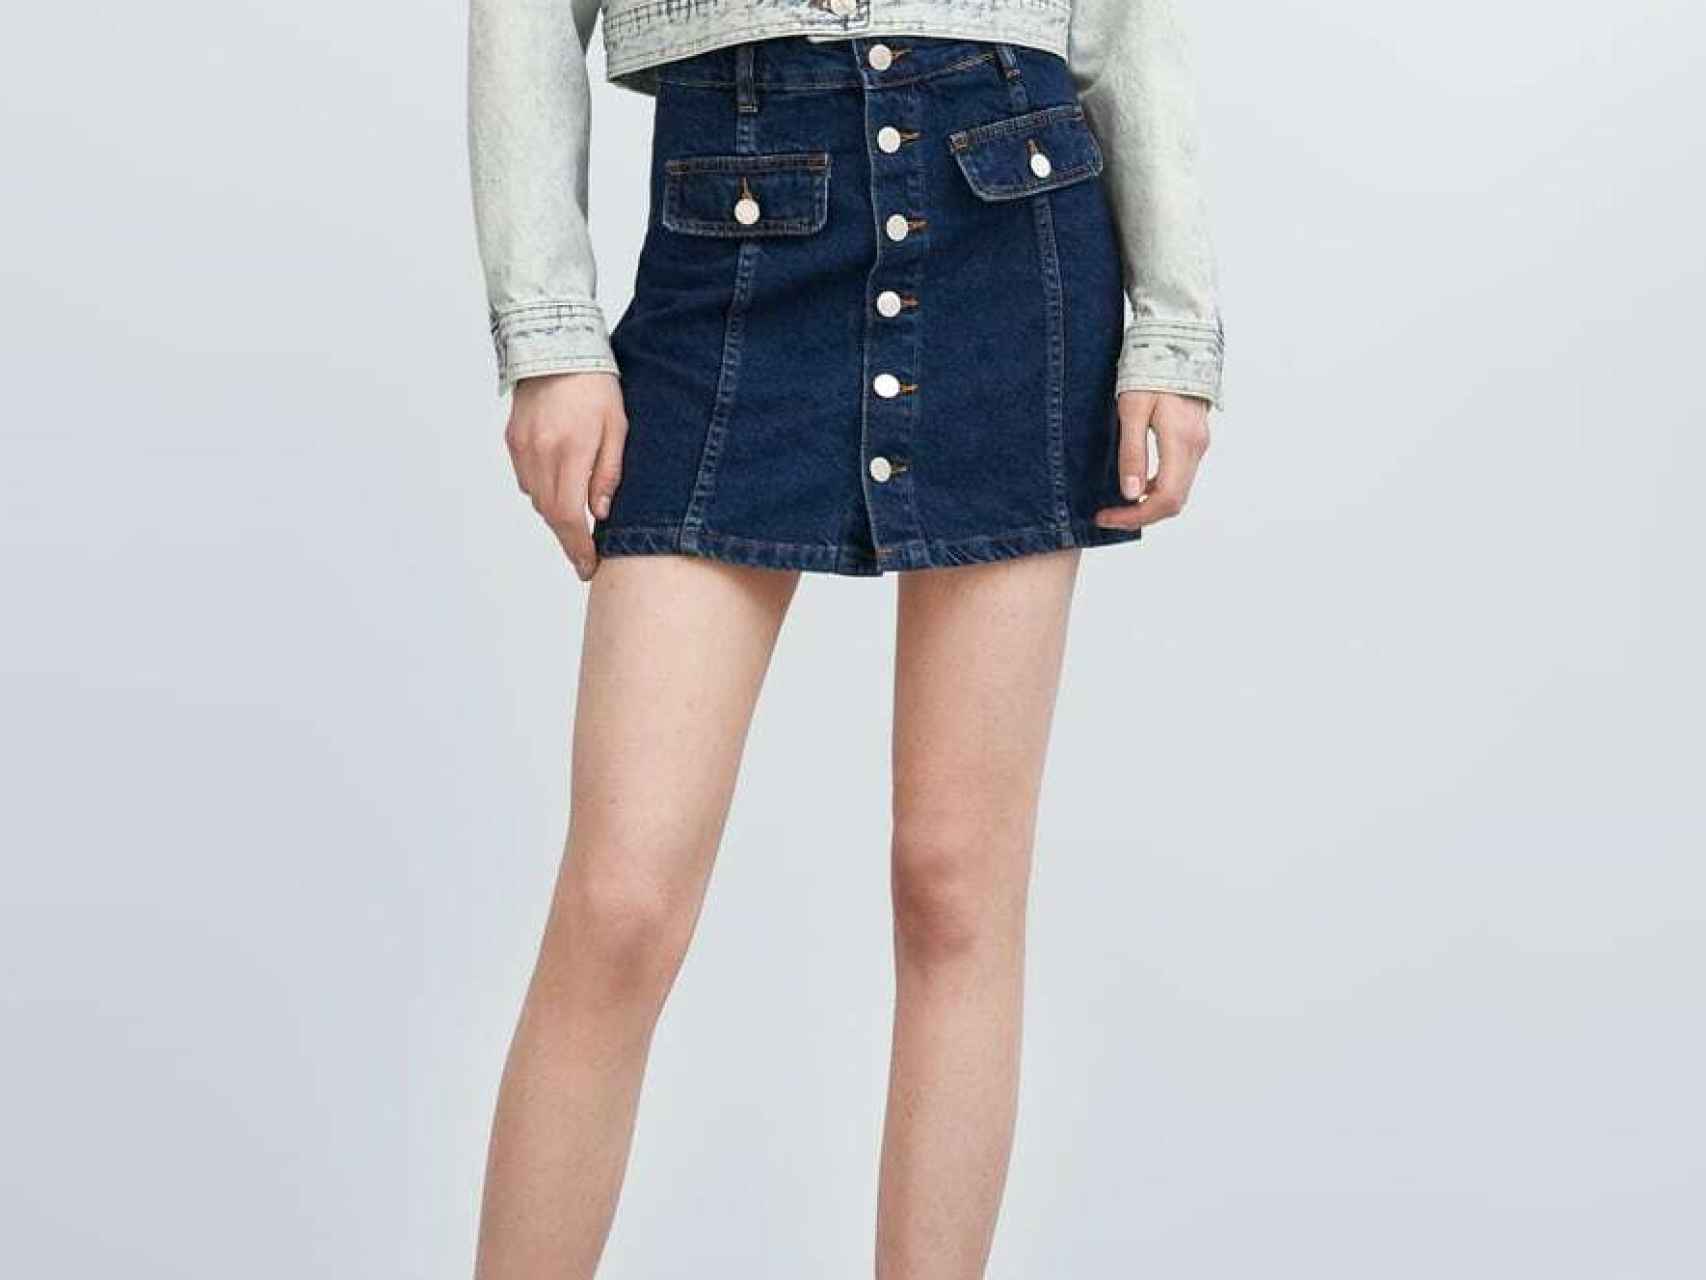 Minifalda vaquera de Zara.